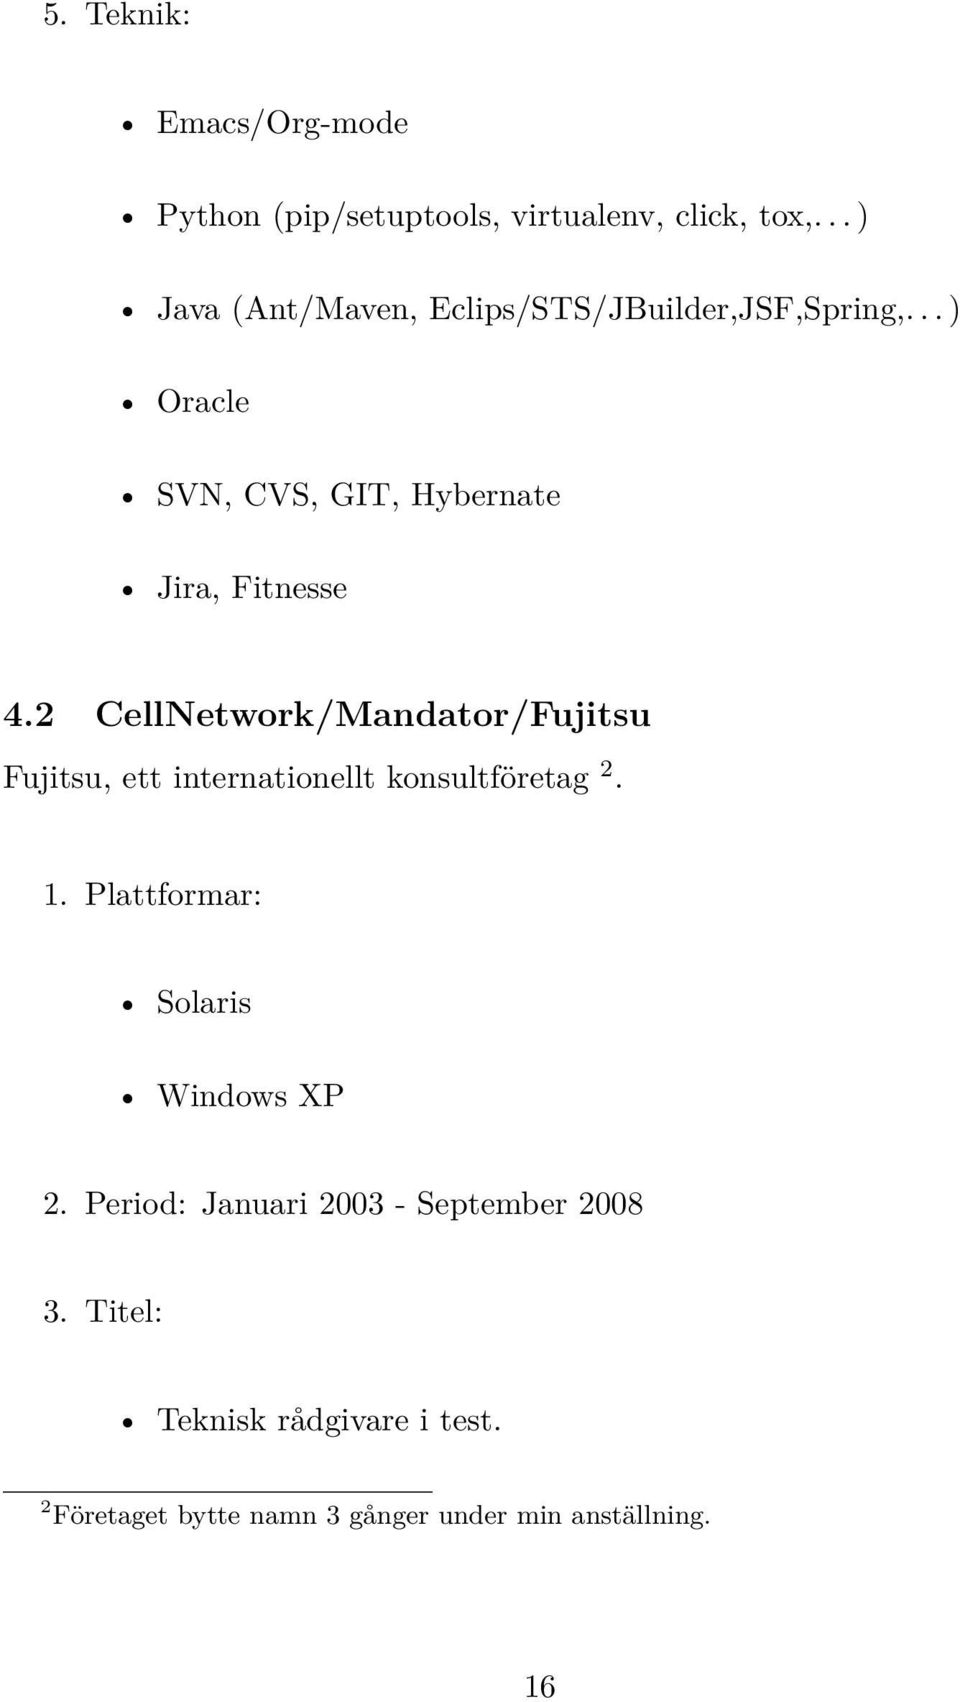 2 CellNetwork/Mandator/Fujitsu Fujitsu, ett internationellt konsultföretag 2. 1.